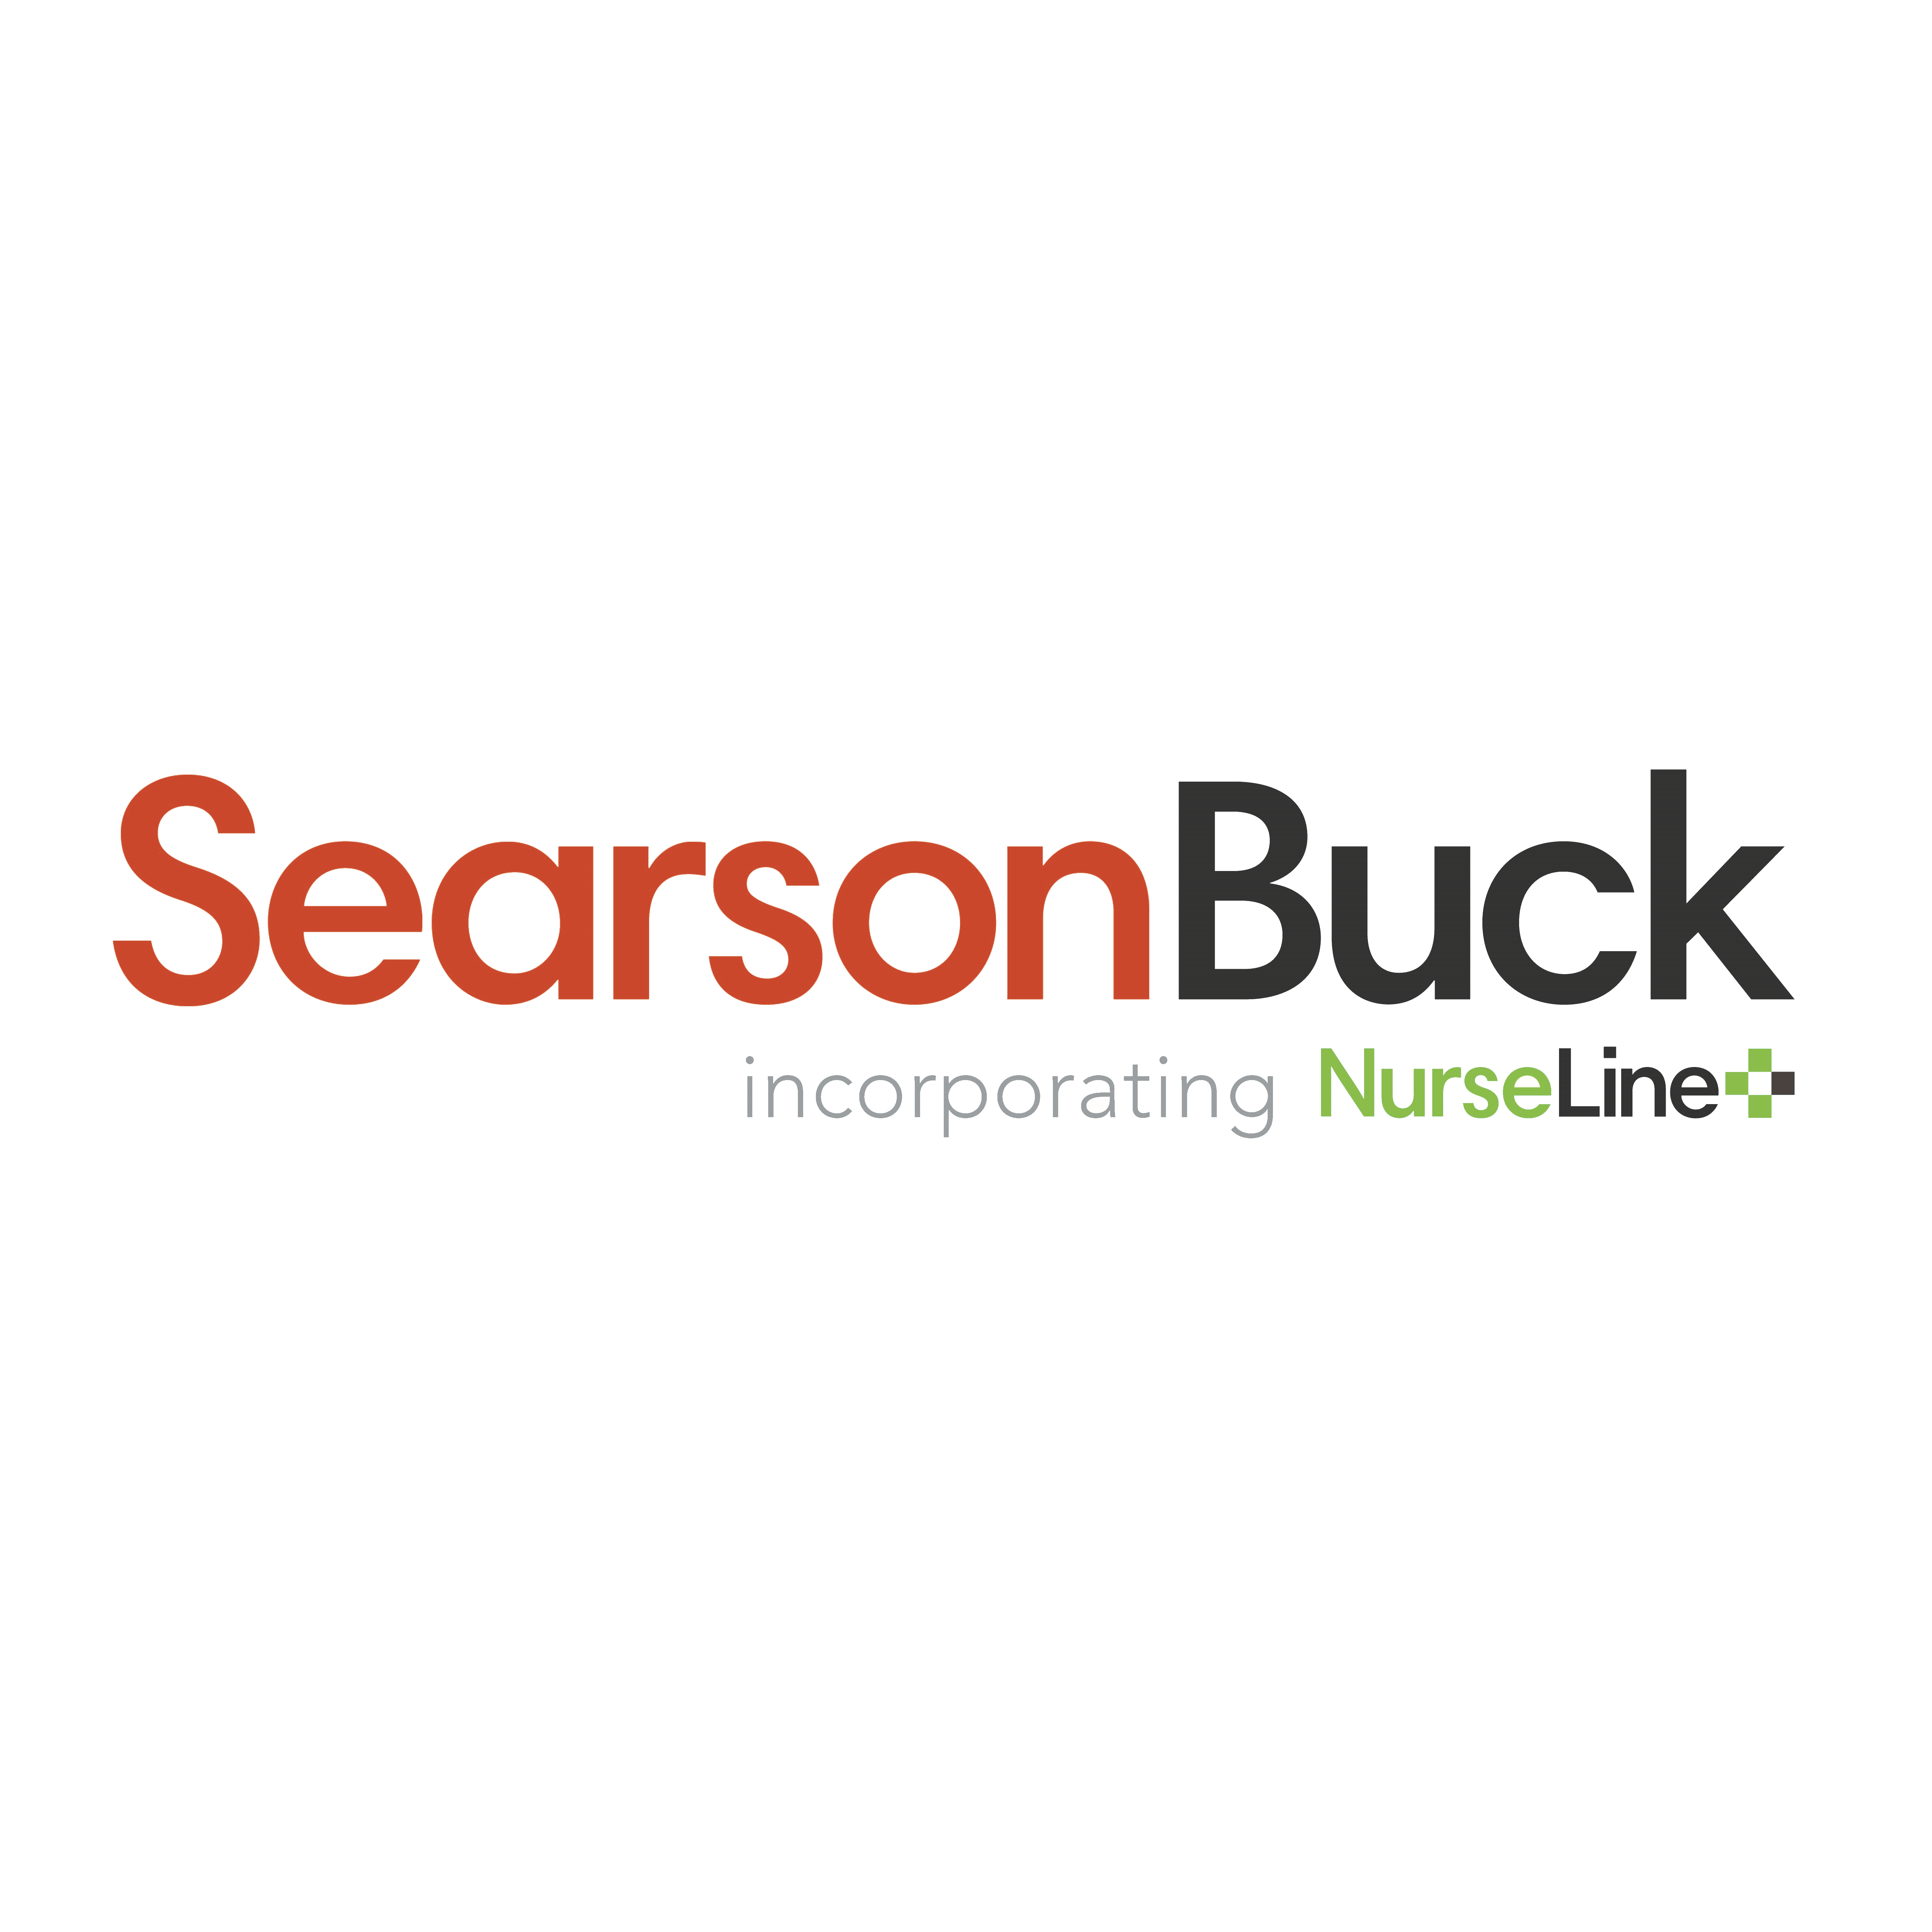 Searson Buck Logo